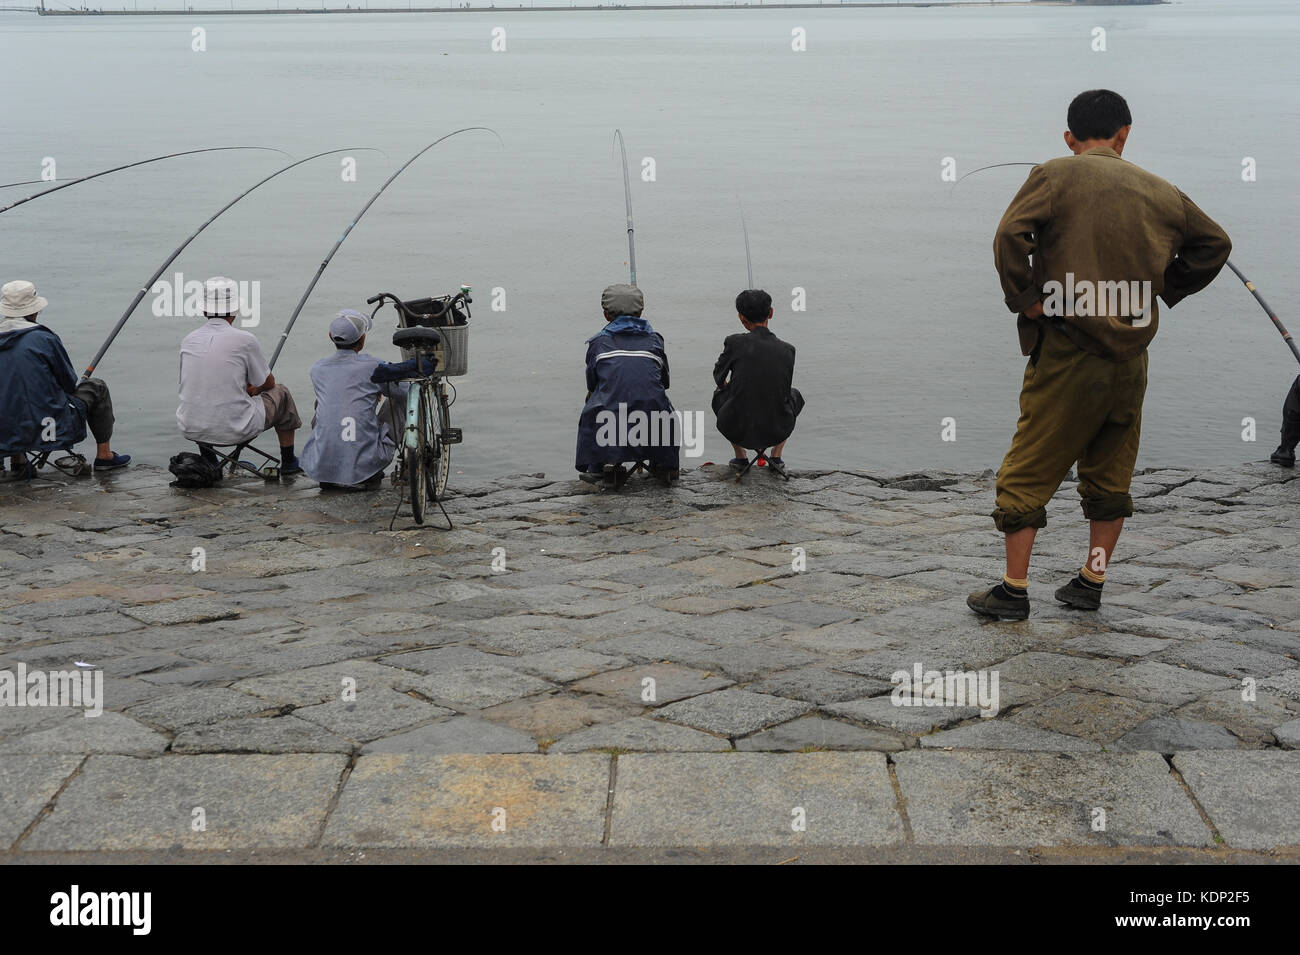 12.08.2012, Wonsan, Corea del Norte, Asia - RELOJES HOMBRE DE COREA DEL NORTE, un grupo de peces locales en una mañana lluviosa y gris en la ciudad costera de Wonsan. Foto de stock